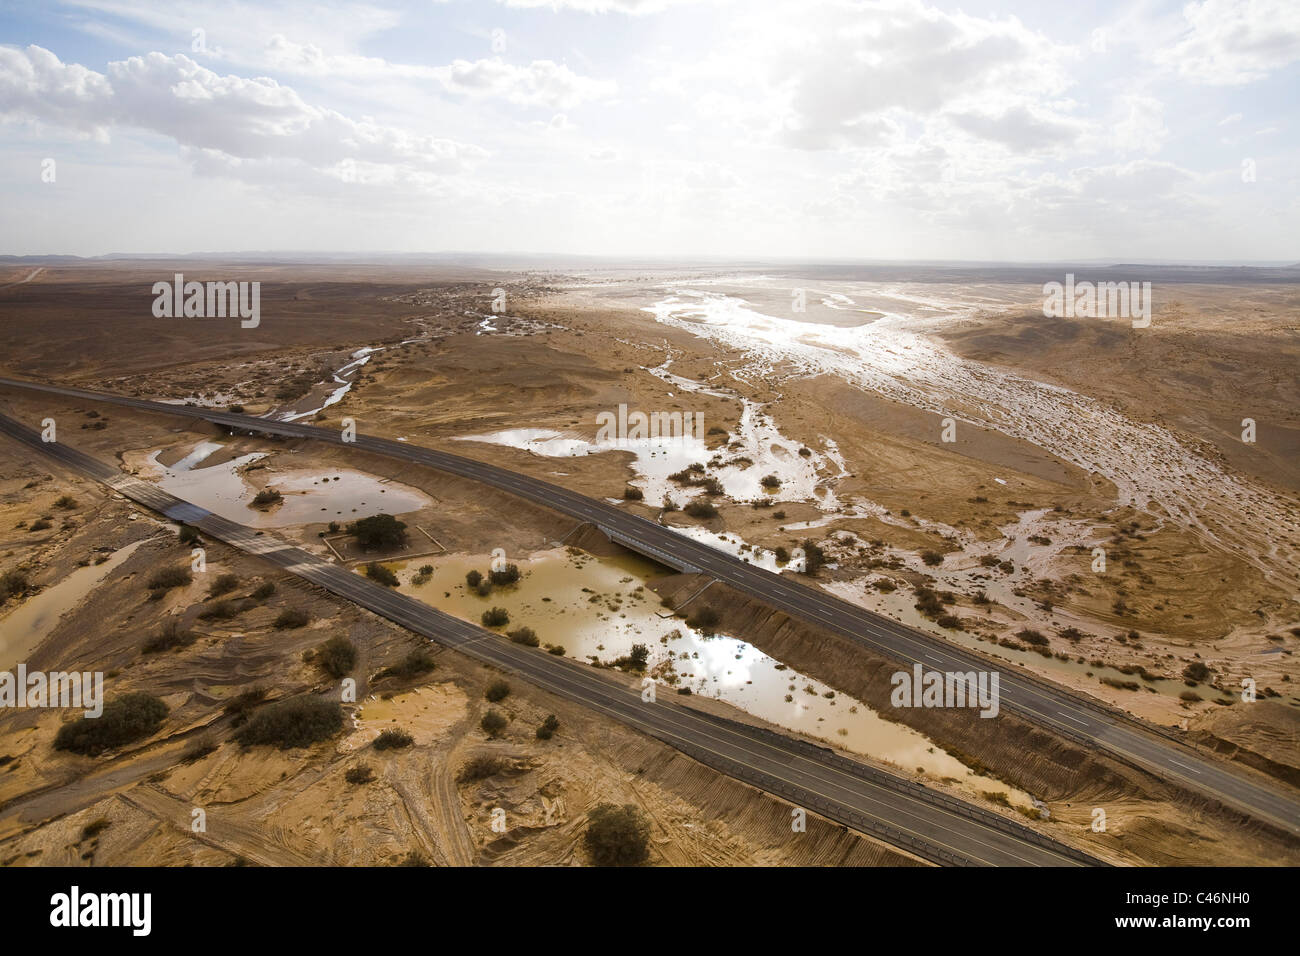 Fotografia aerea di inondazioni in Arava Foto Stock